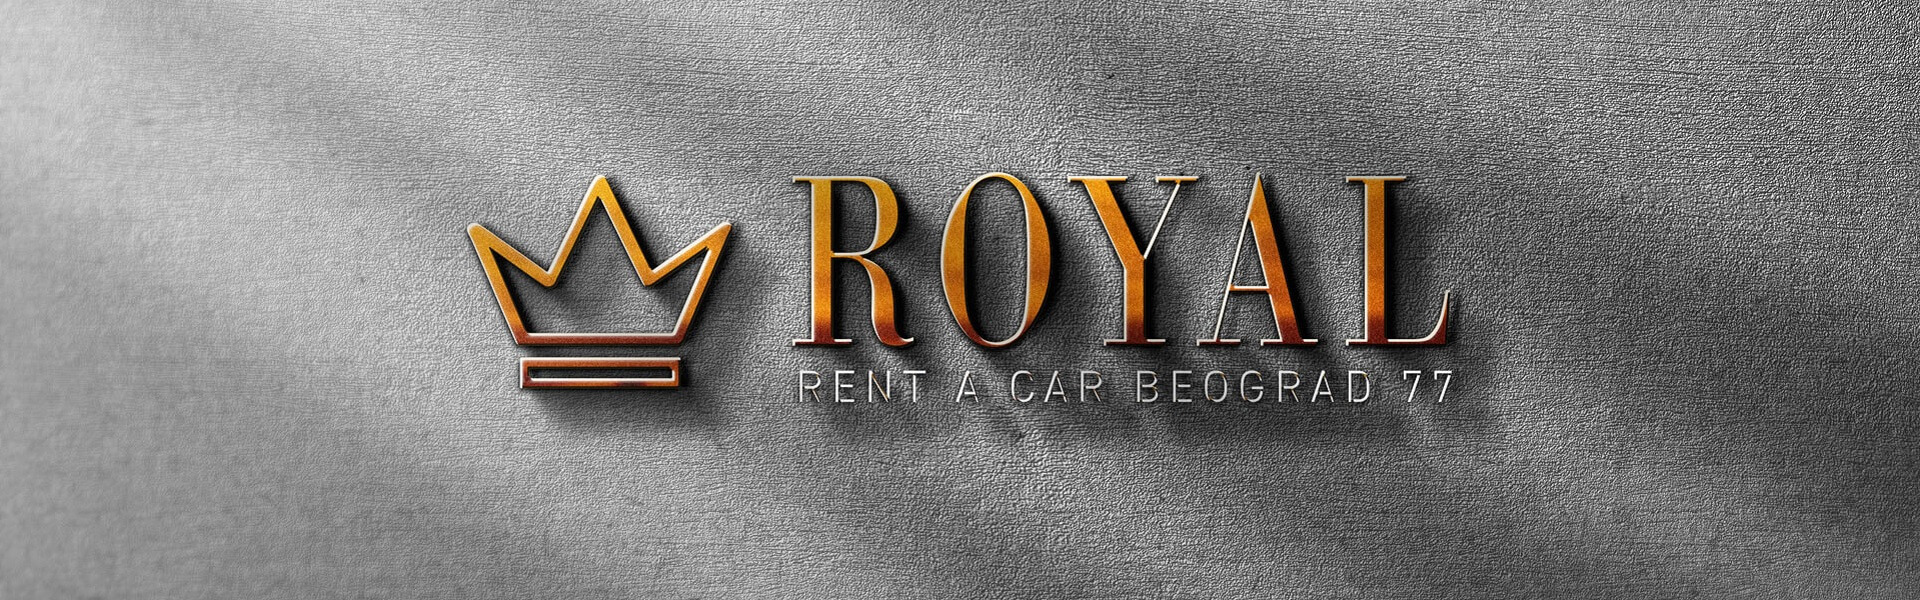 Rent a car Atos | Rent a car Beograd Royal